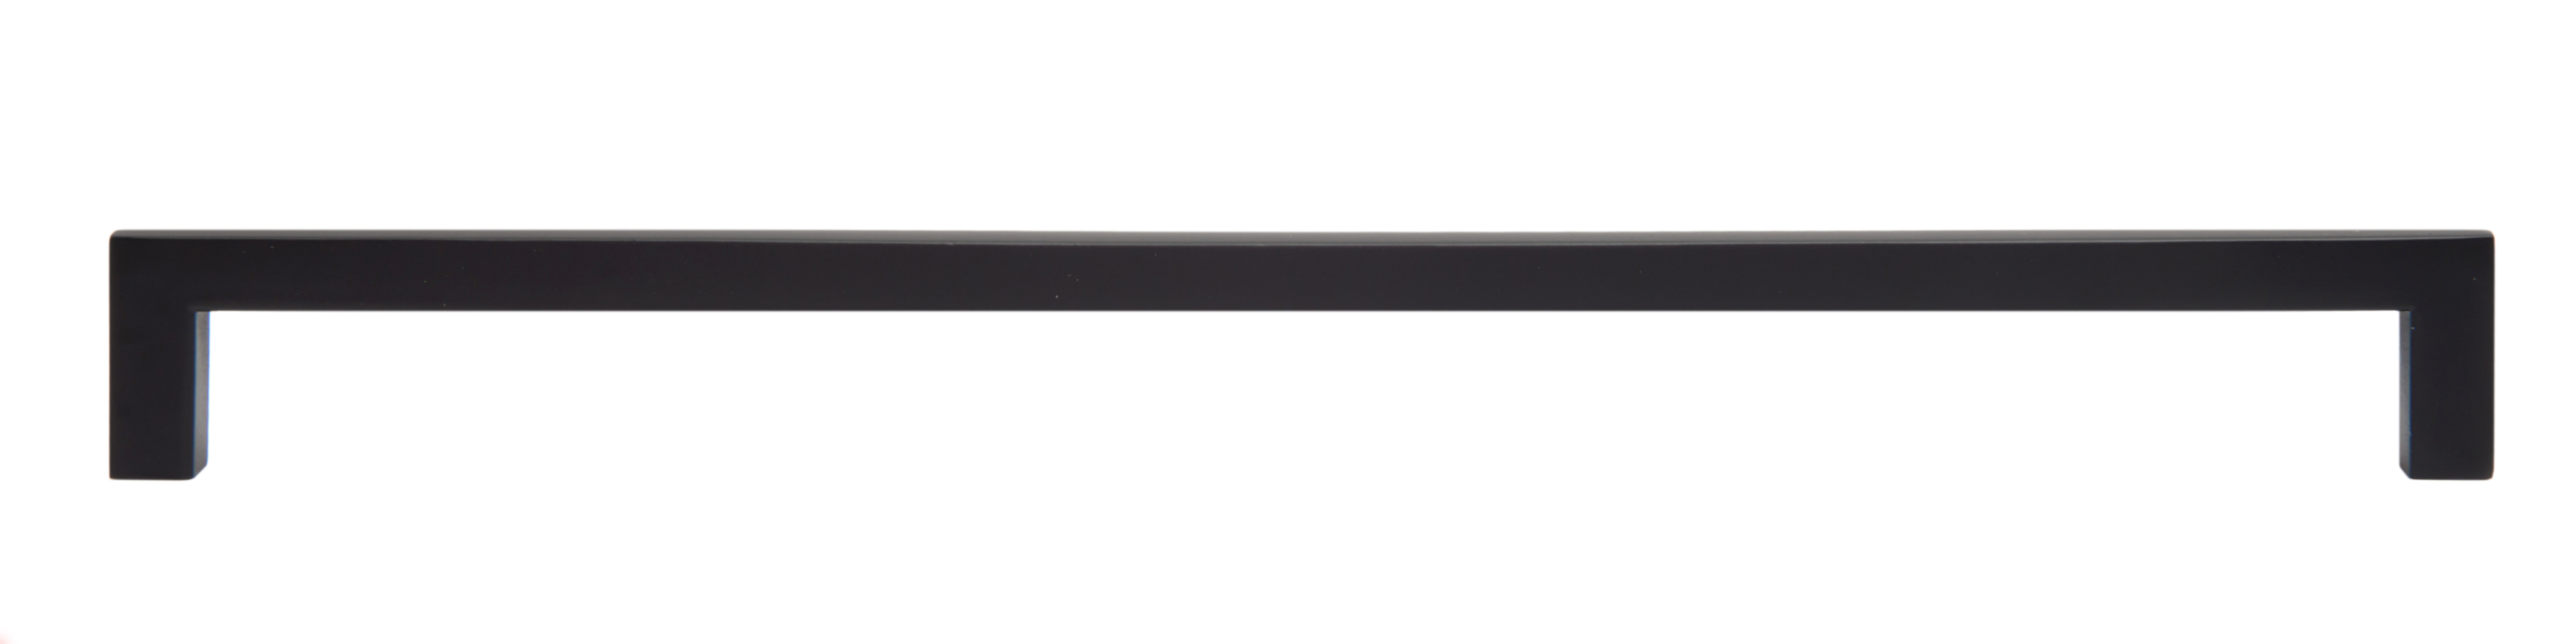 Ручка мебельная скоба 320мм черная матовая RS043BL.4/320 Boyard / 719925-4 / оптом и в розницу / мебельная фурнитура "ЛАВР"